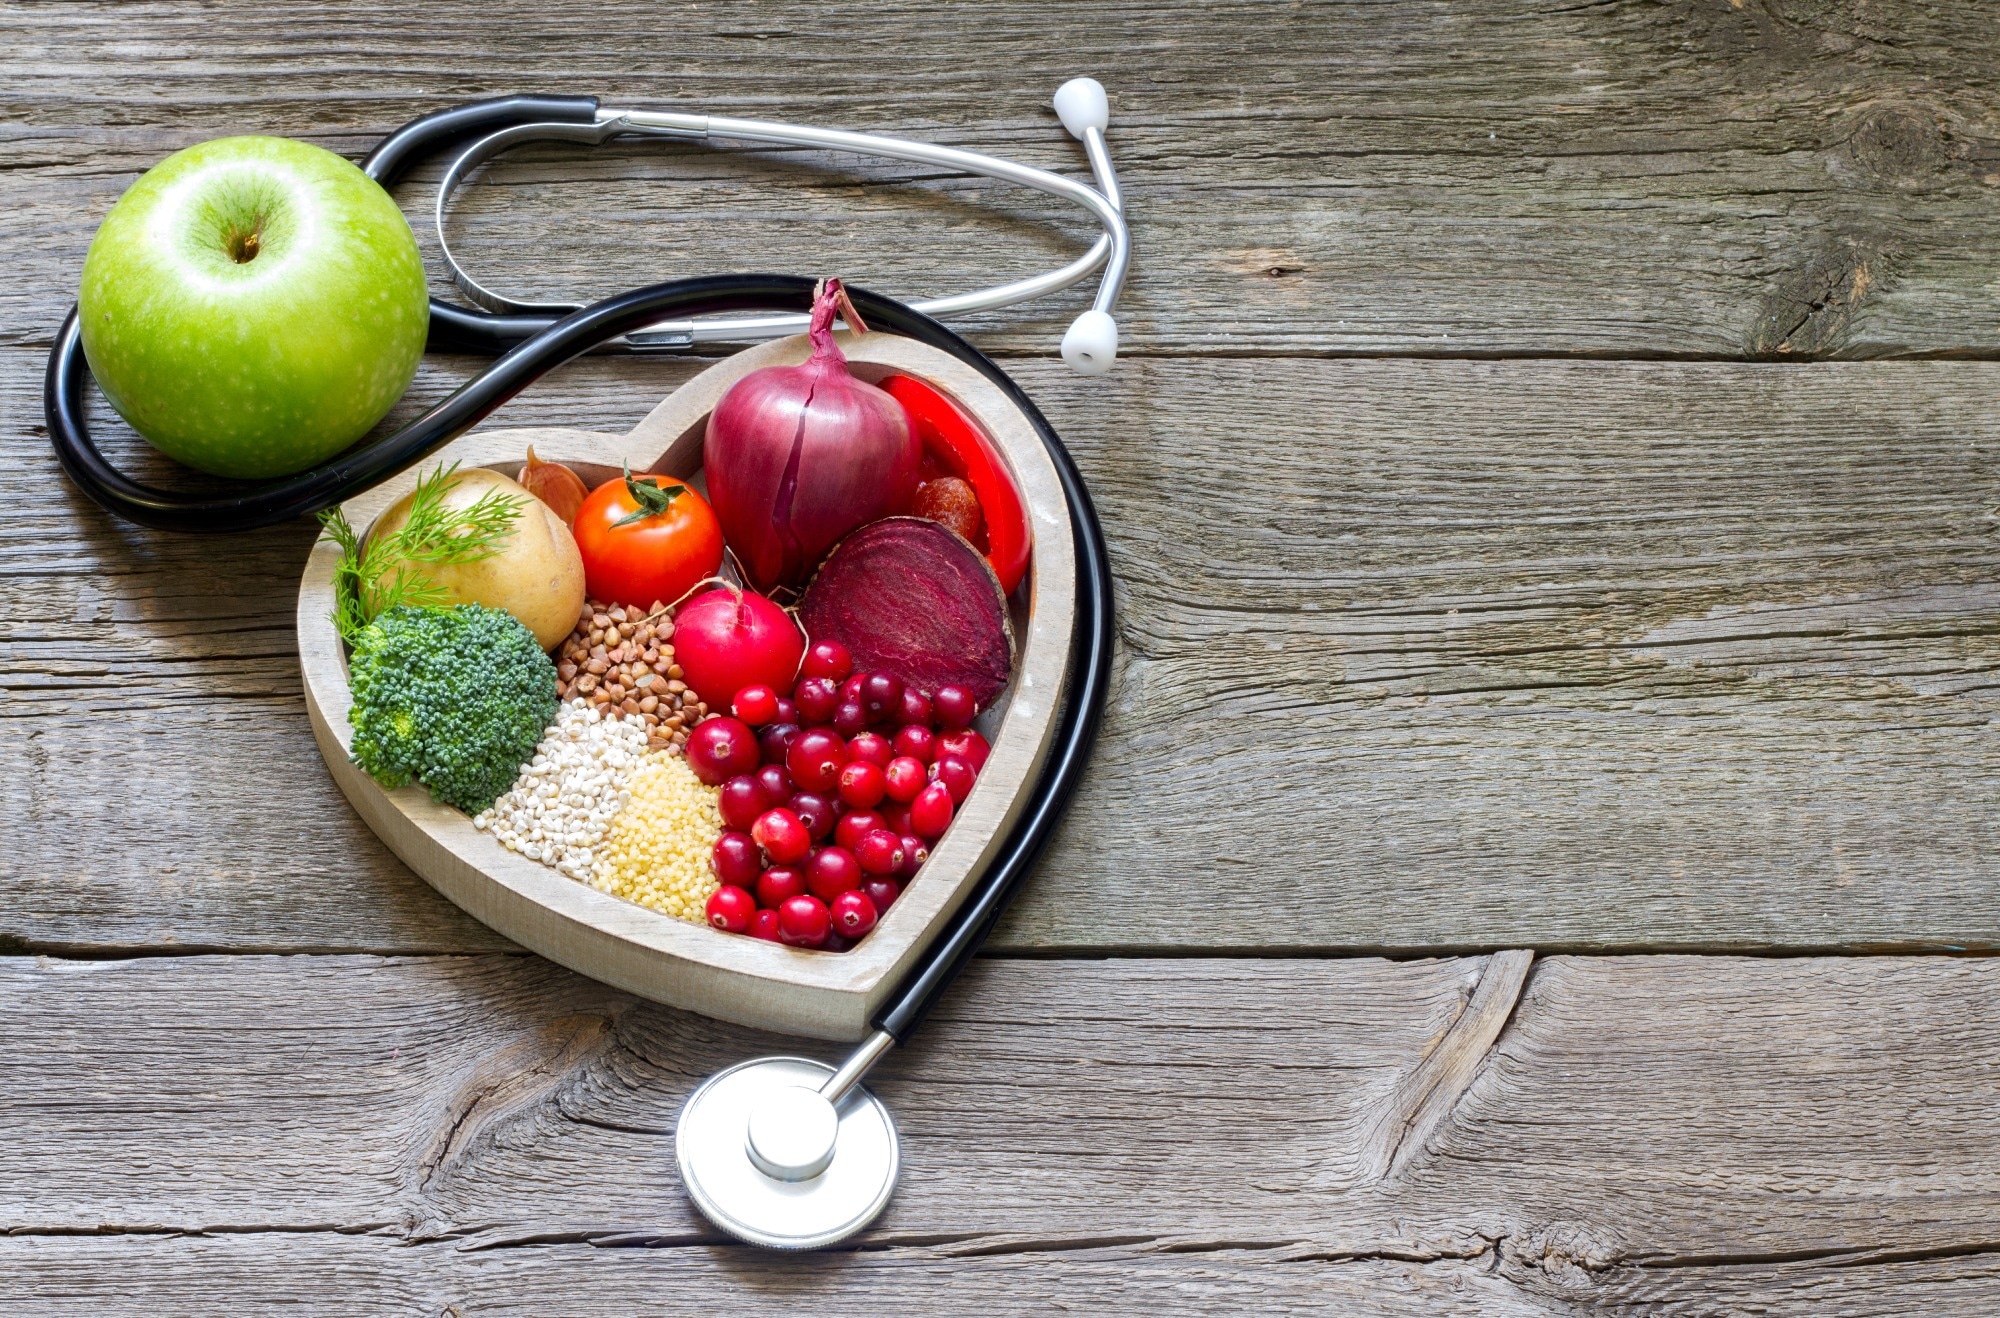 مطالعه: اثرات مداخله غذایی بر بیماری های انسانی: مکانیسم های مولکولی و پتانسیل درمانی.  اعتبار تصویر: udra11/Shutterstock.com